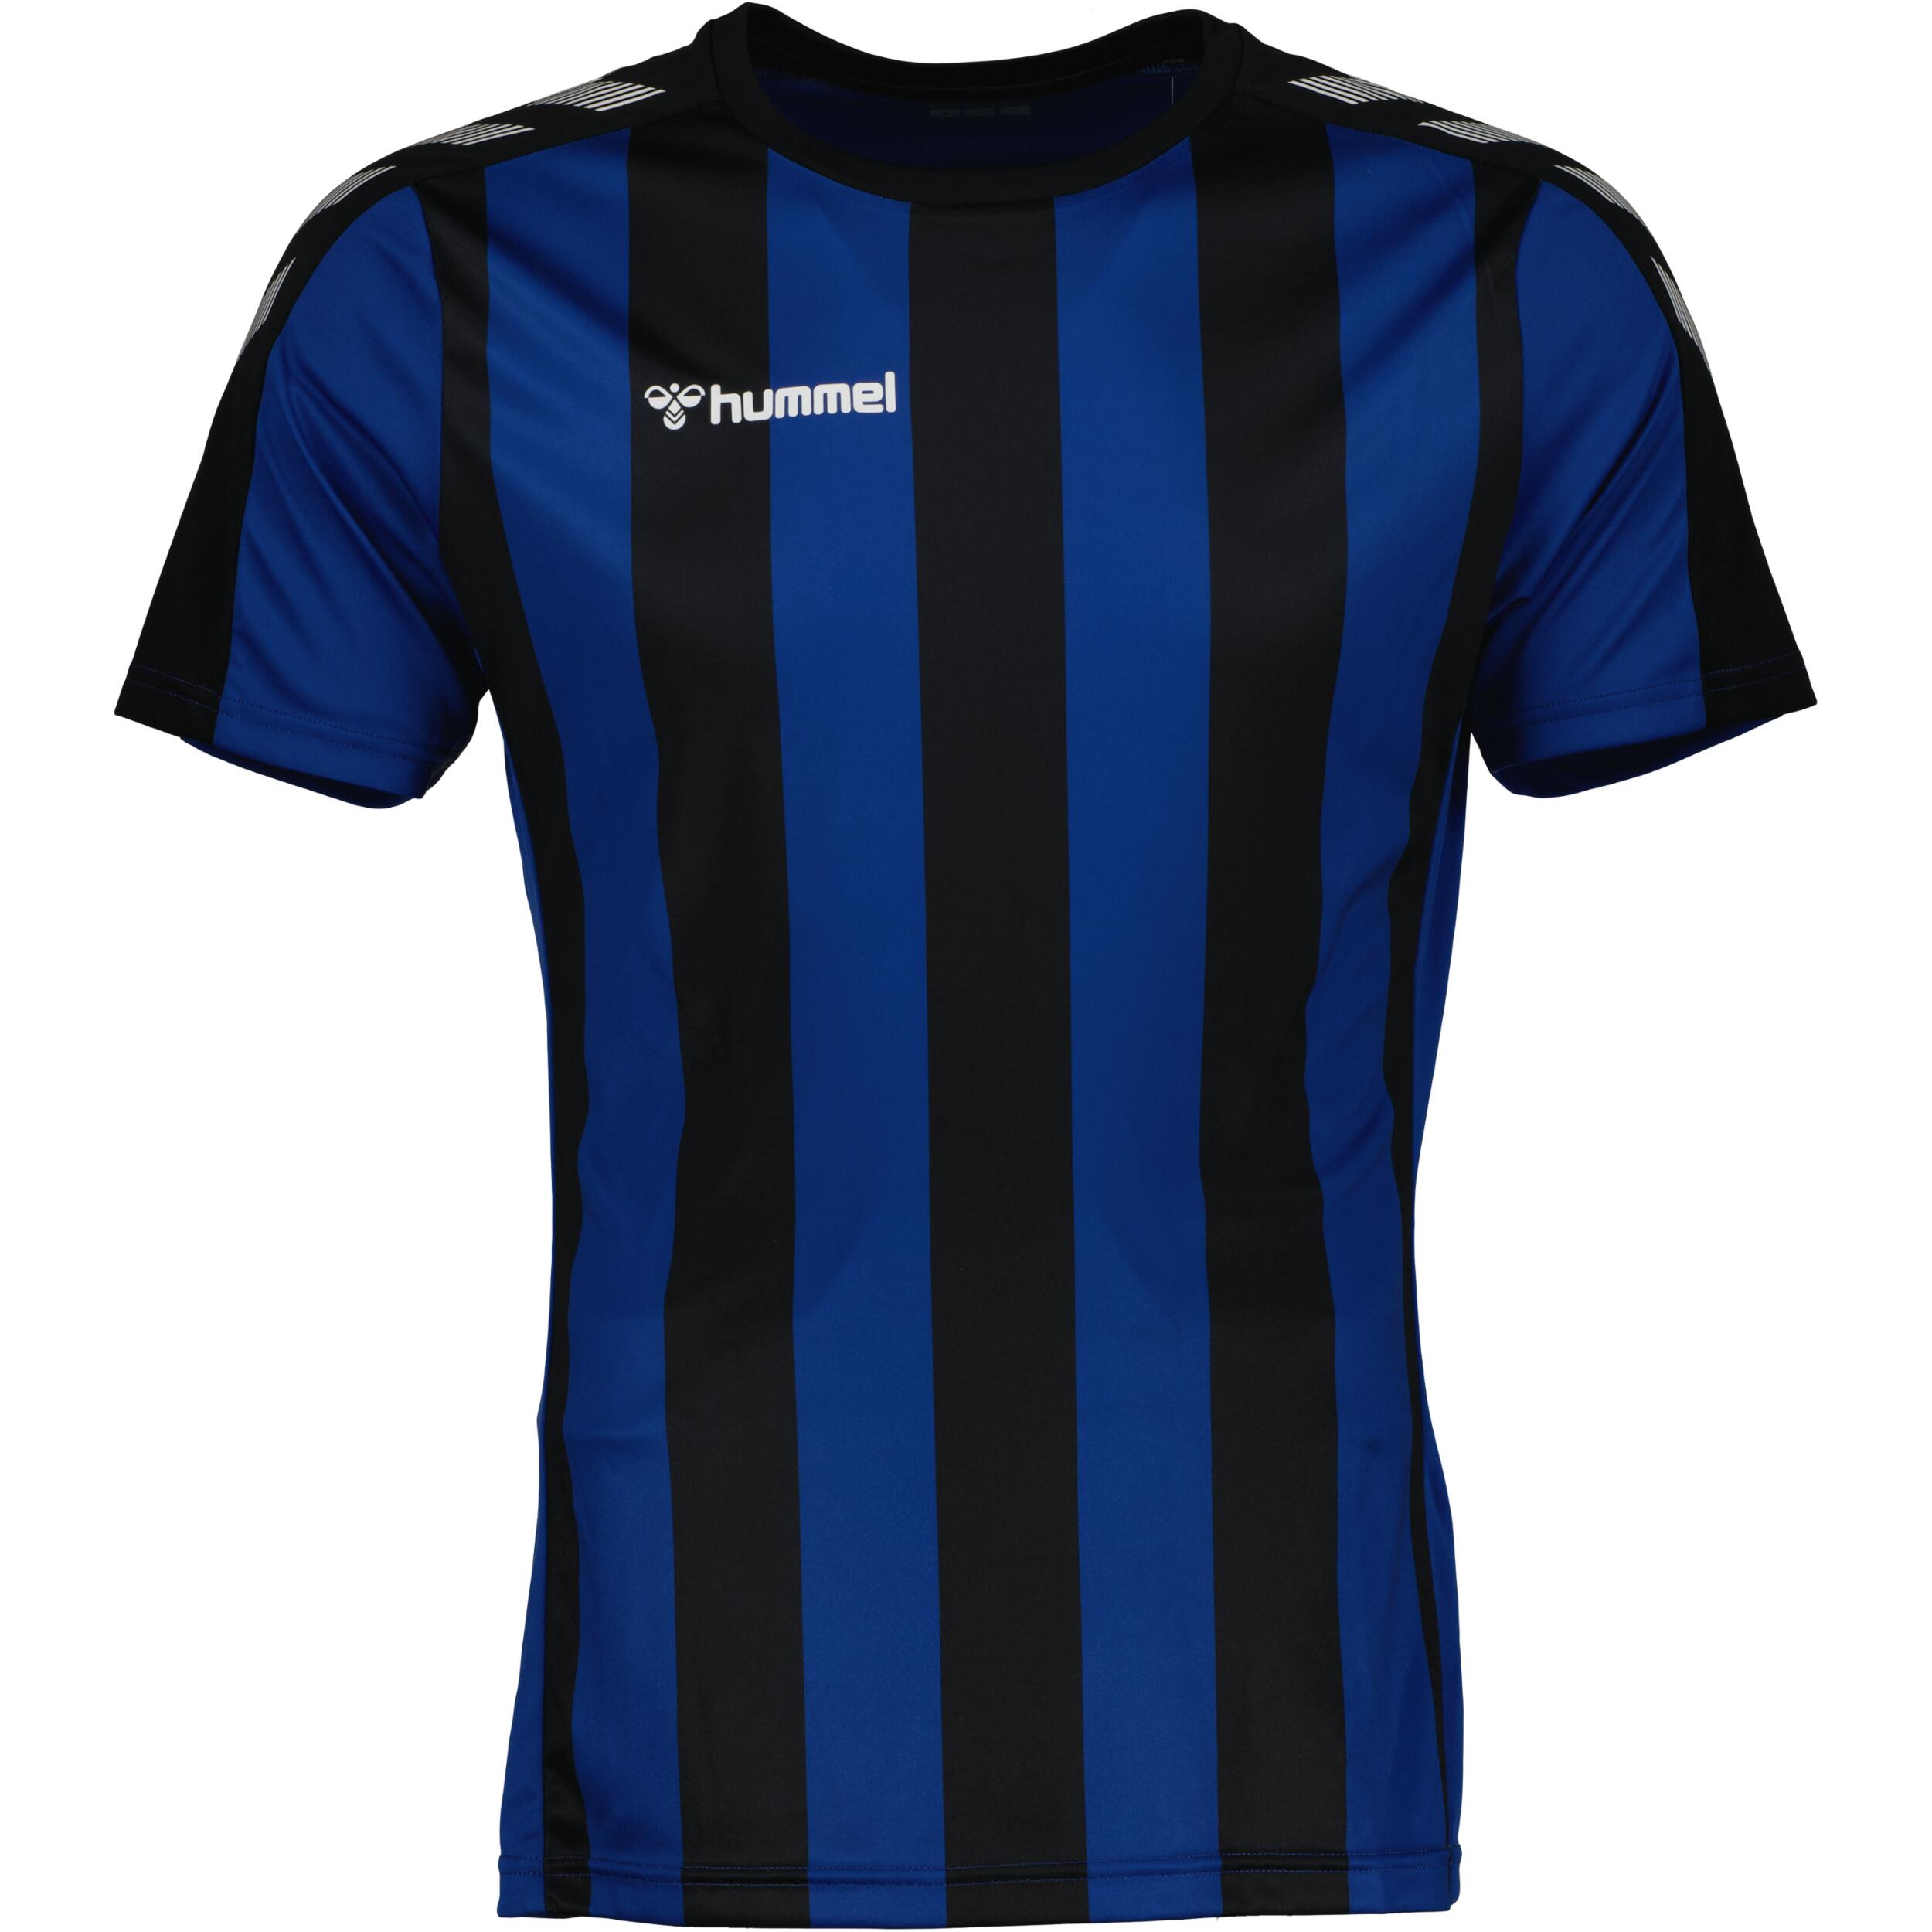 Stripe jersey for men, great for football,  in black/true blue 1/3